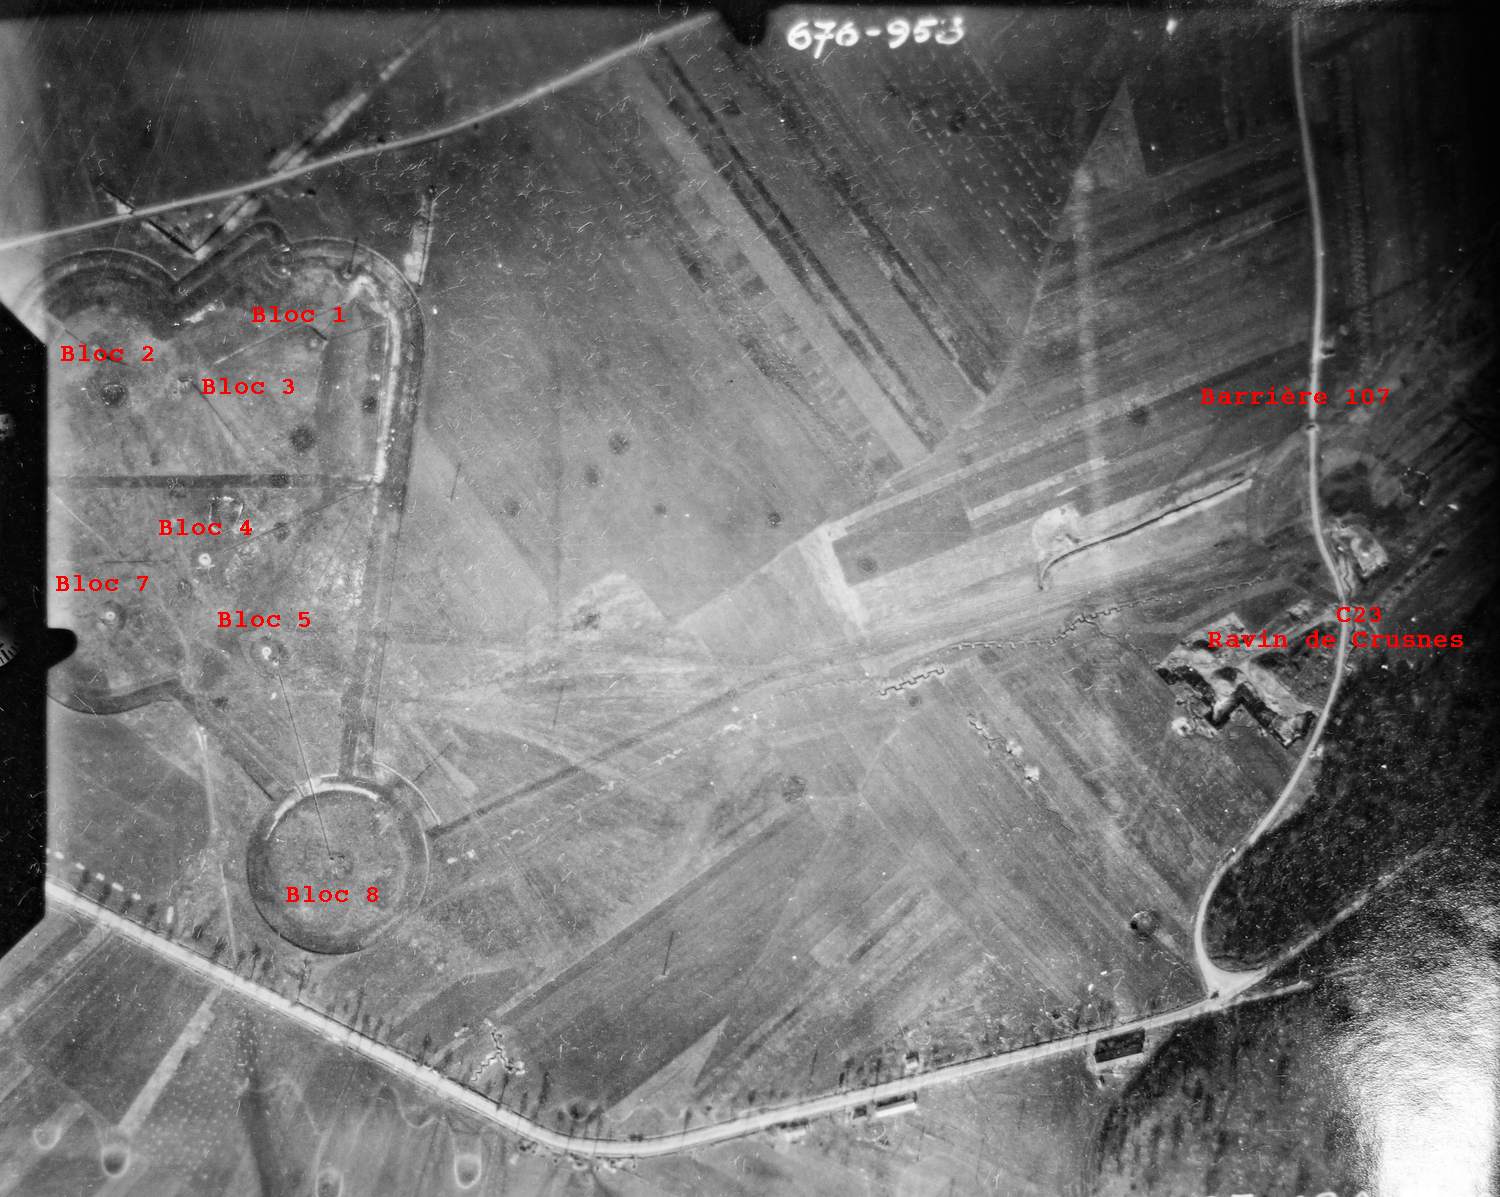 Ligne Maginot - BREHAIN - A6 - (Ouvrage d'artillerie) - Blocs de Bréhain et casemate C23

Vue aérienne - Mission 60 Altitude 2000 - 9 mars 1940 